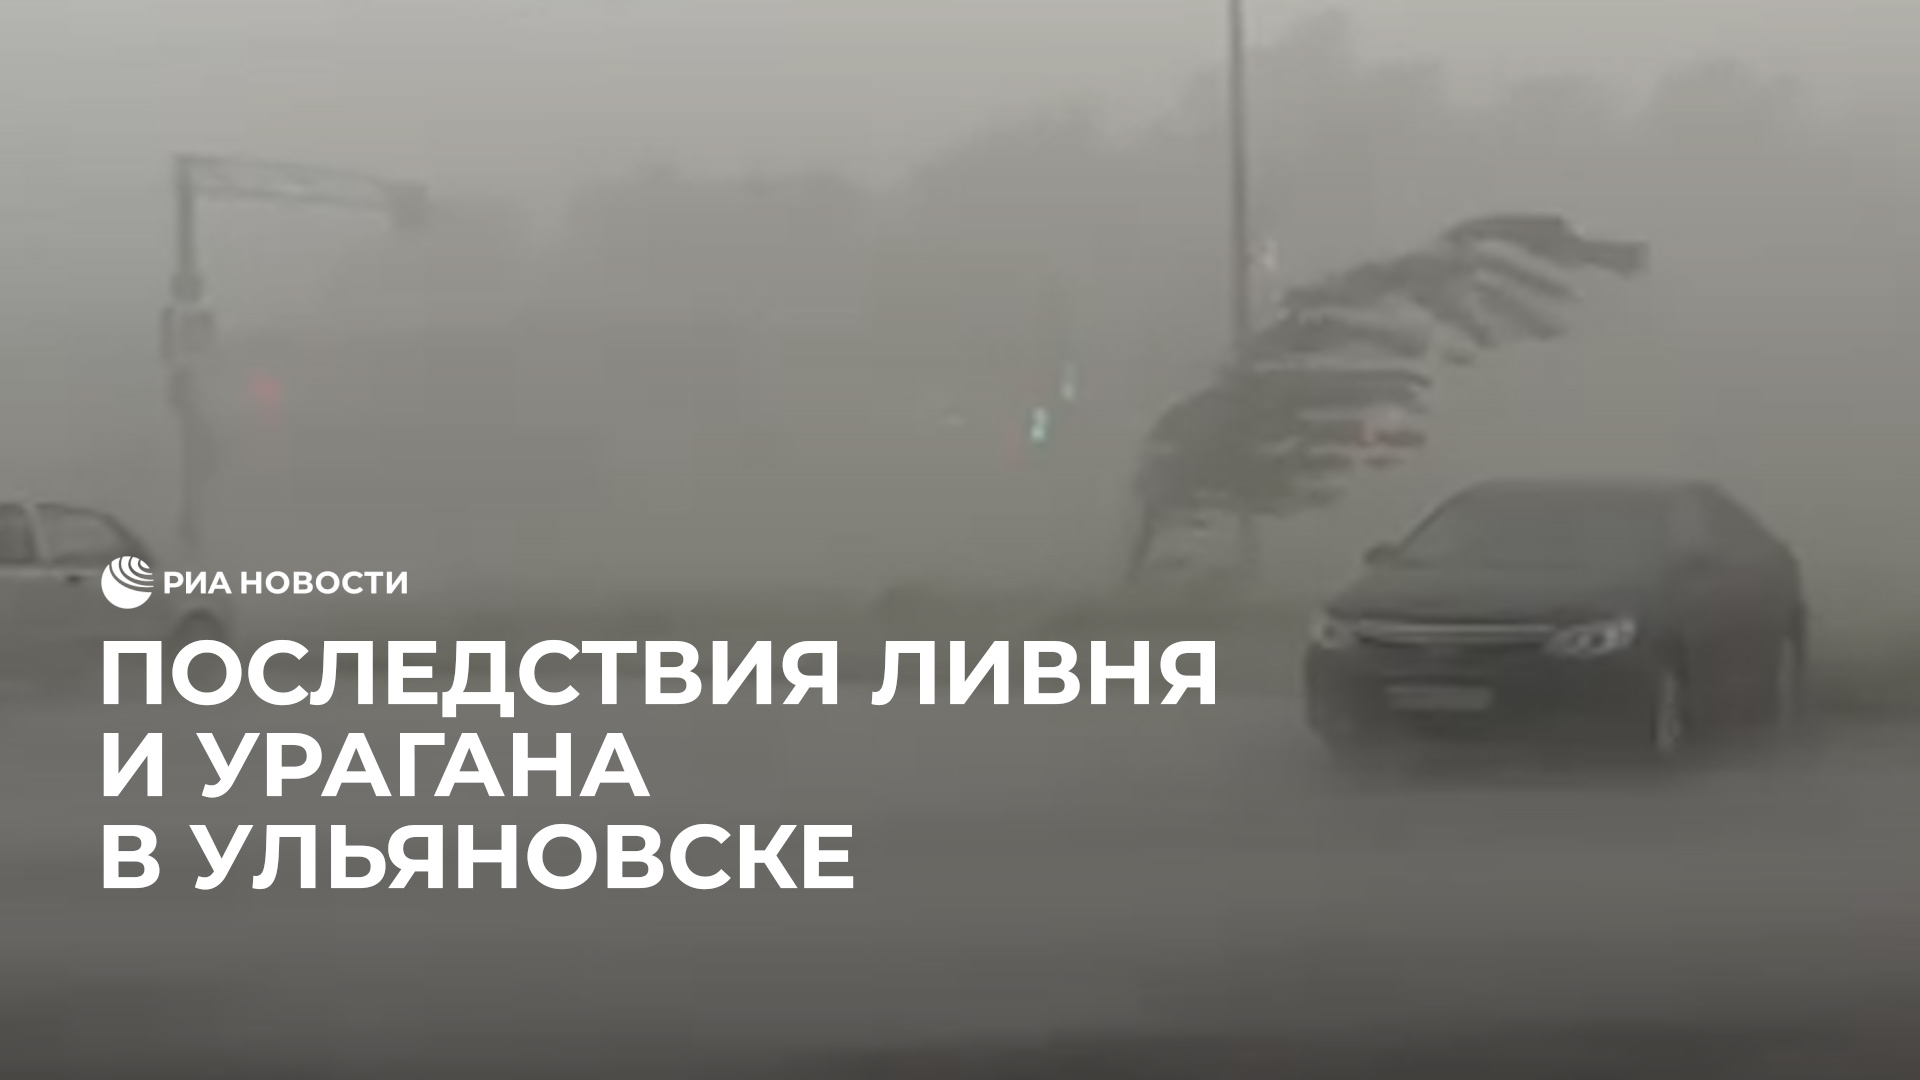 Последствия ливня и урагана в Ульяновске